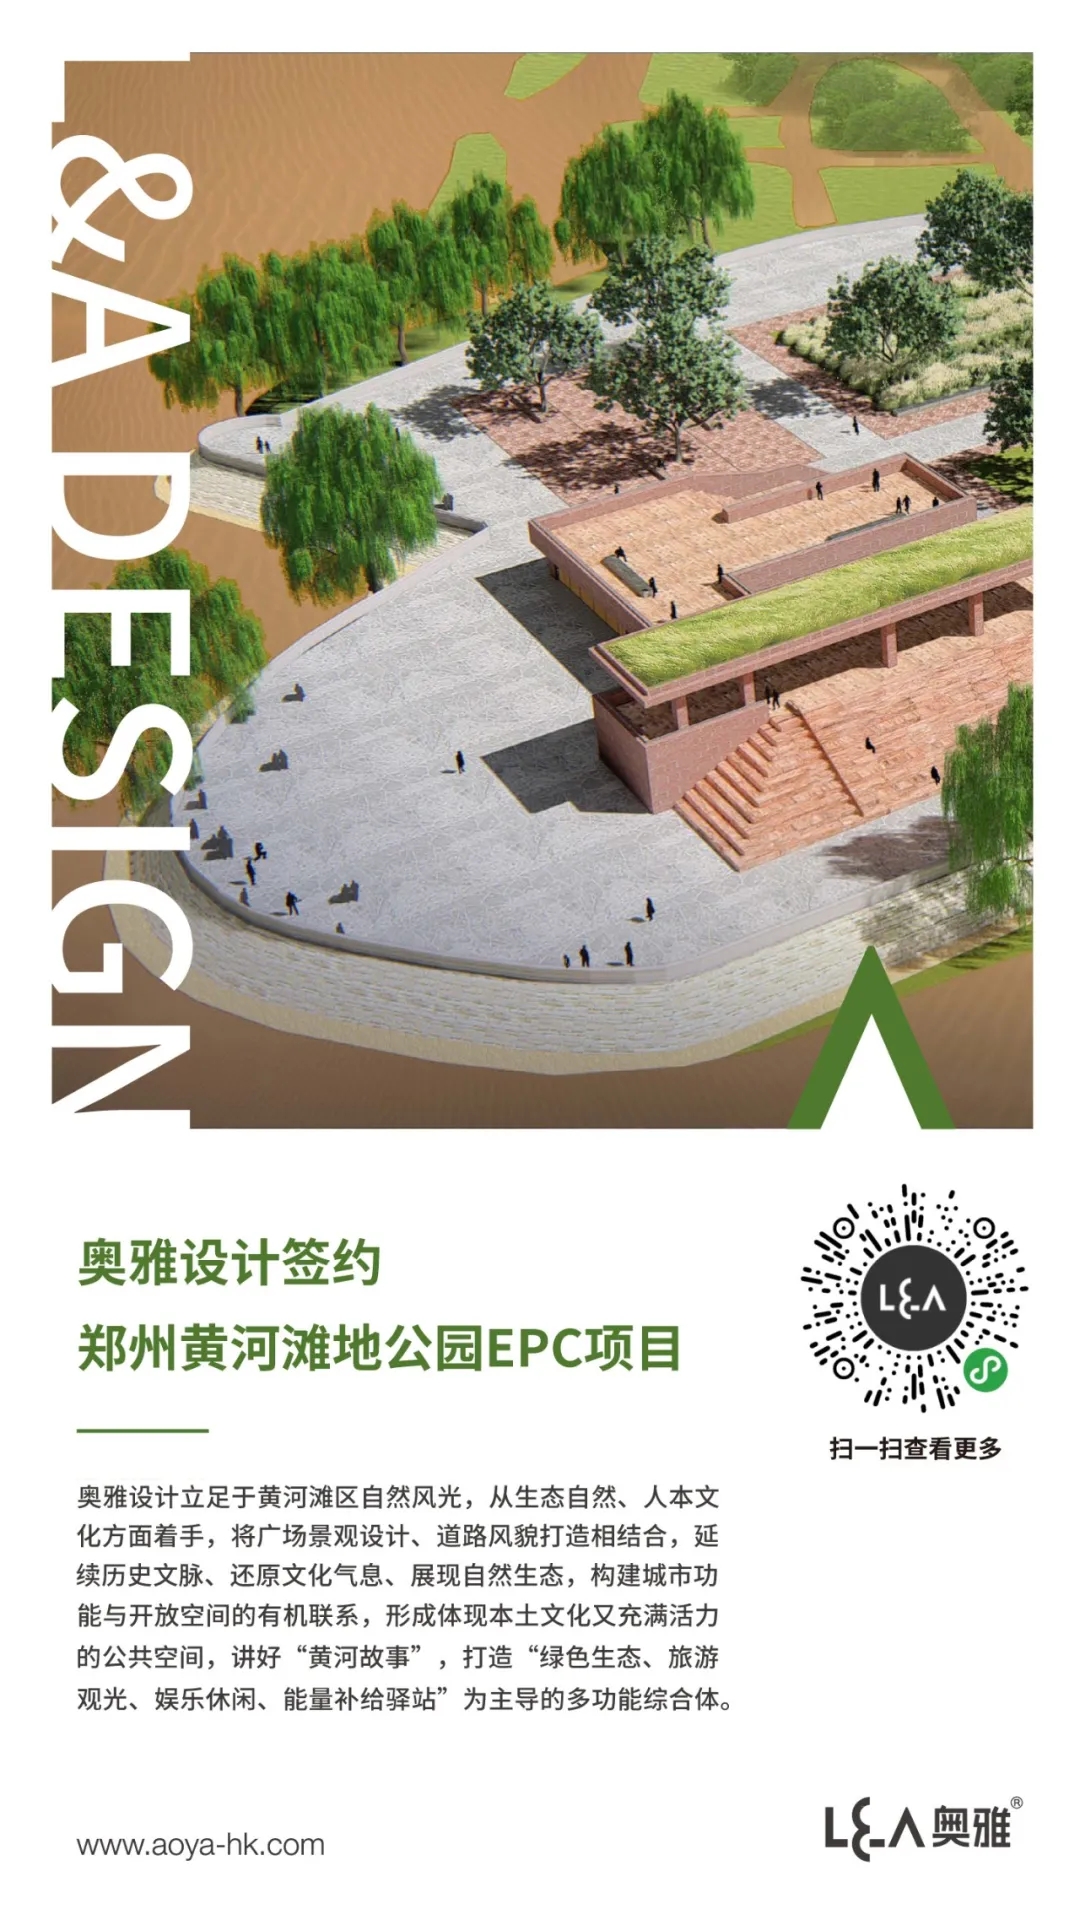 奥雅设计签约郑州黄河滩地公园EPC项目